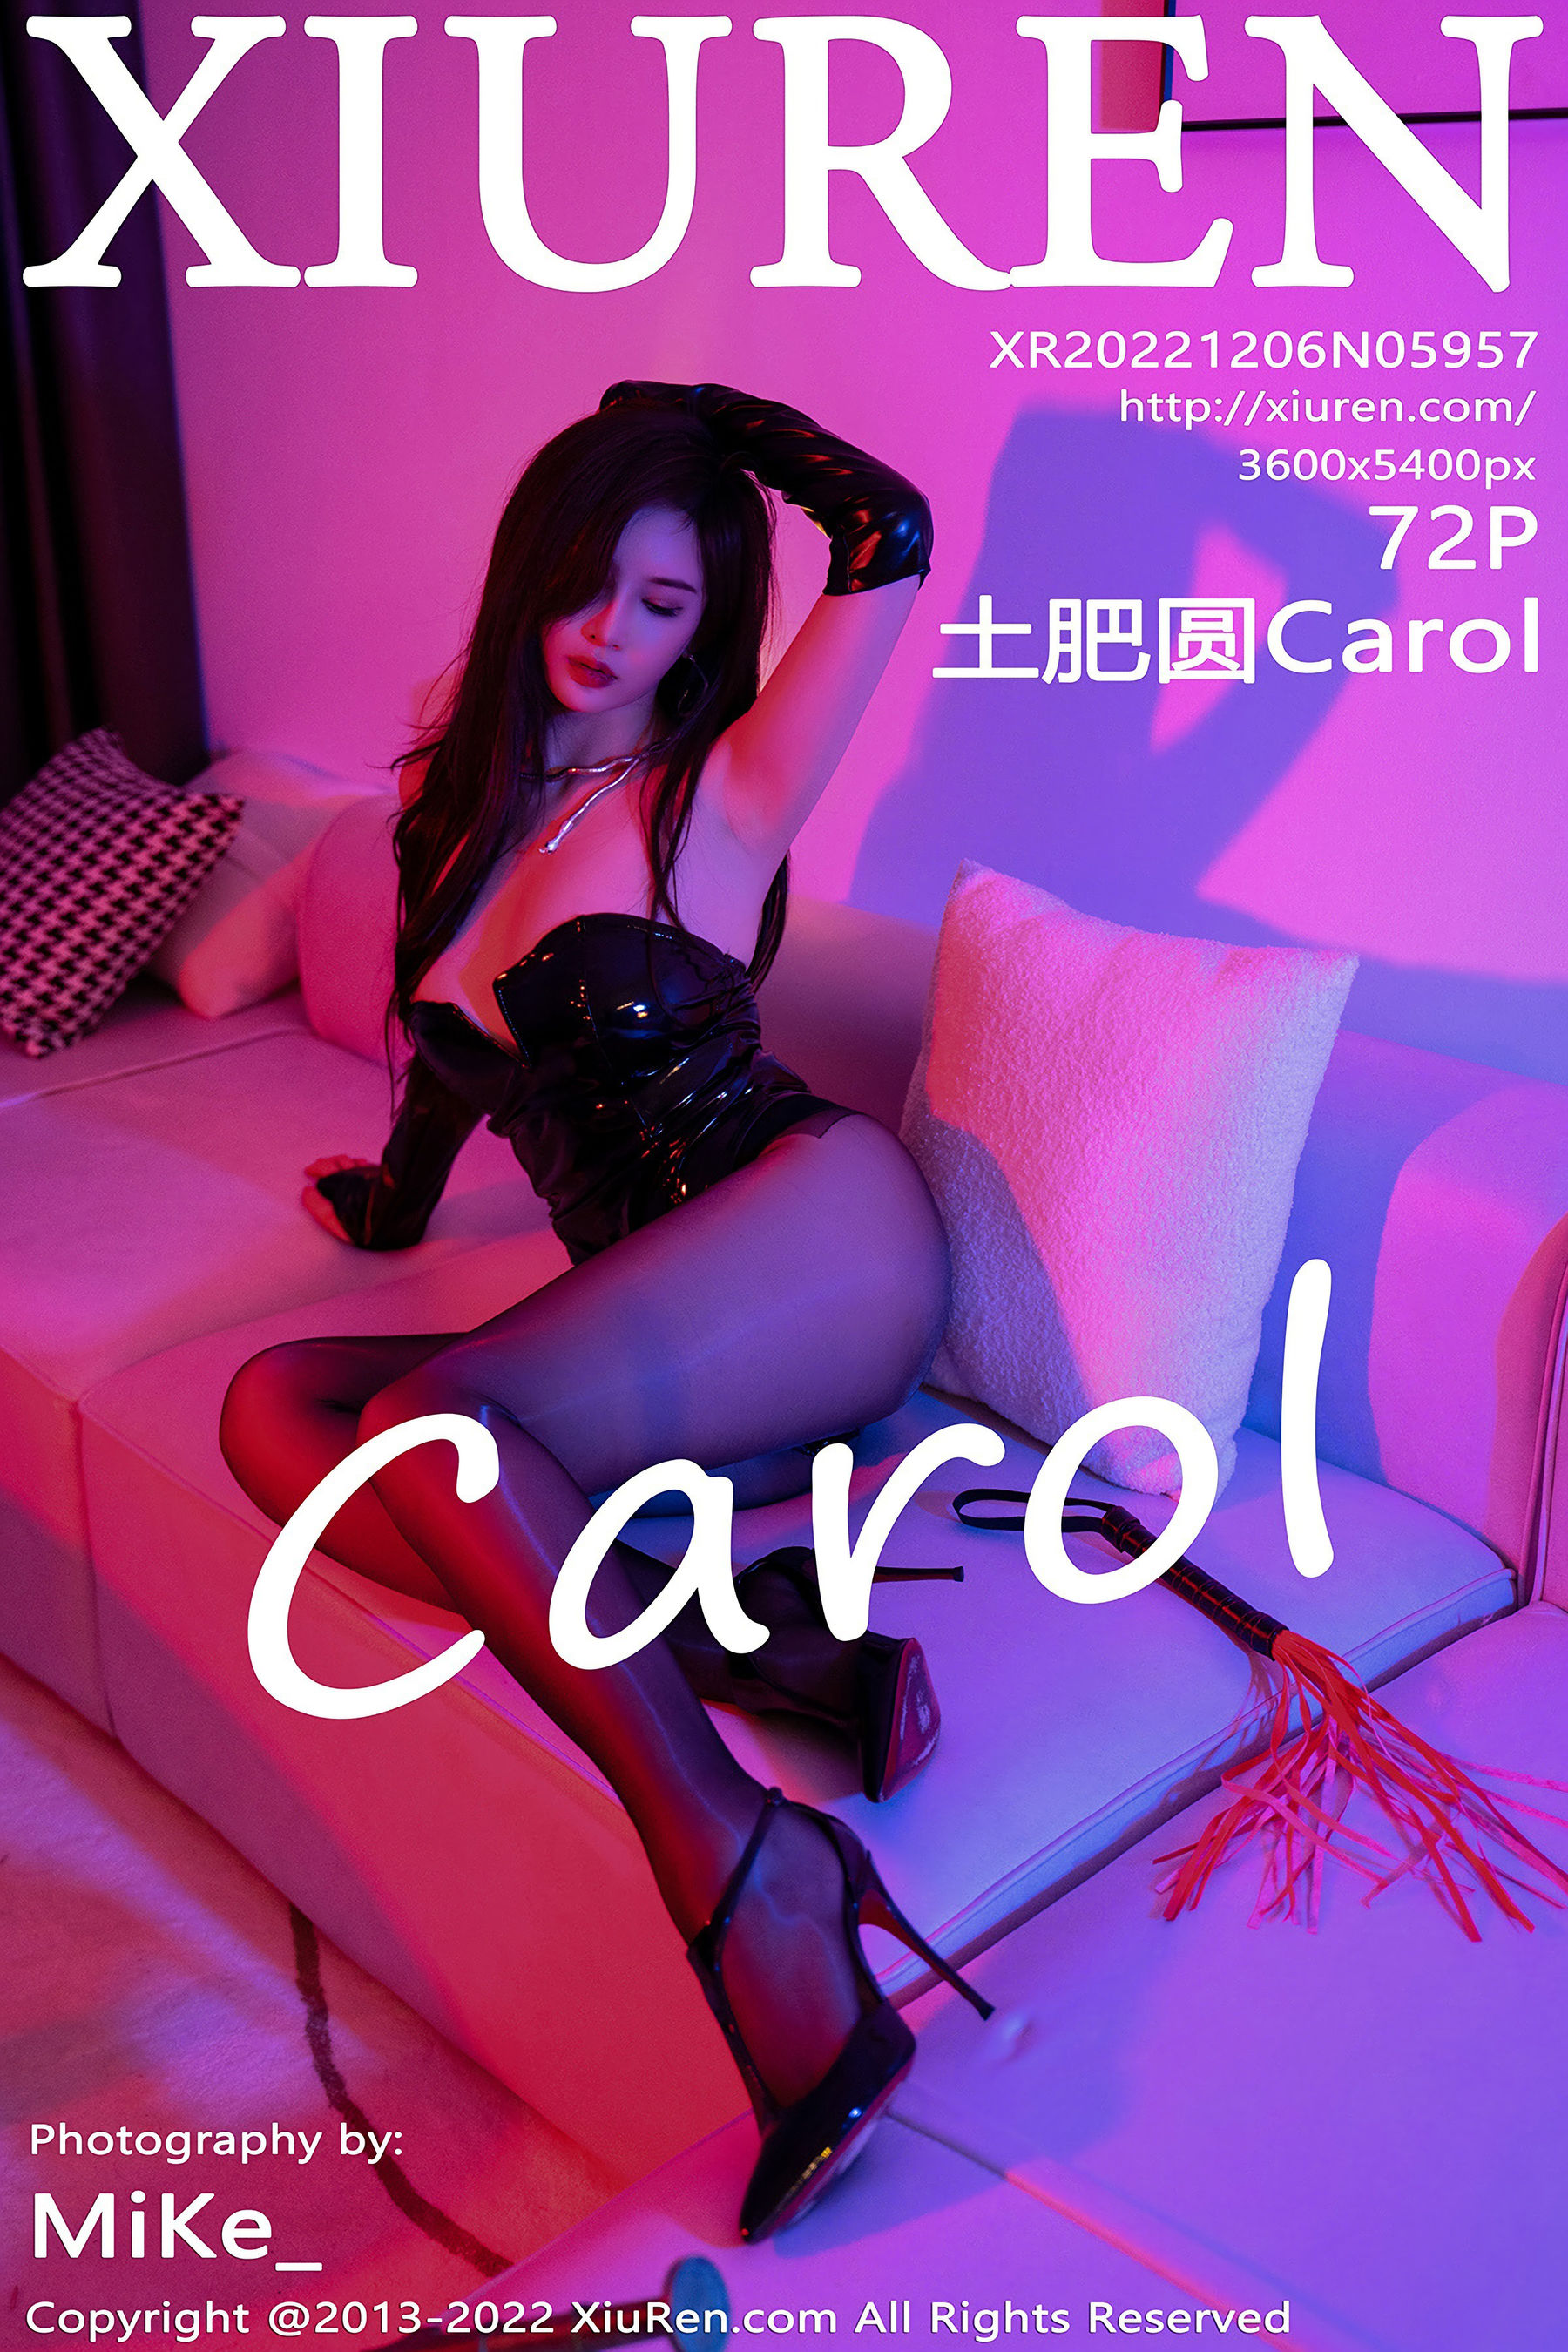 [秀人XiuRen] No.5957 土肥圆Carol